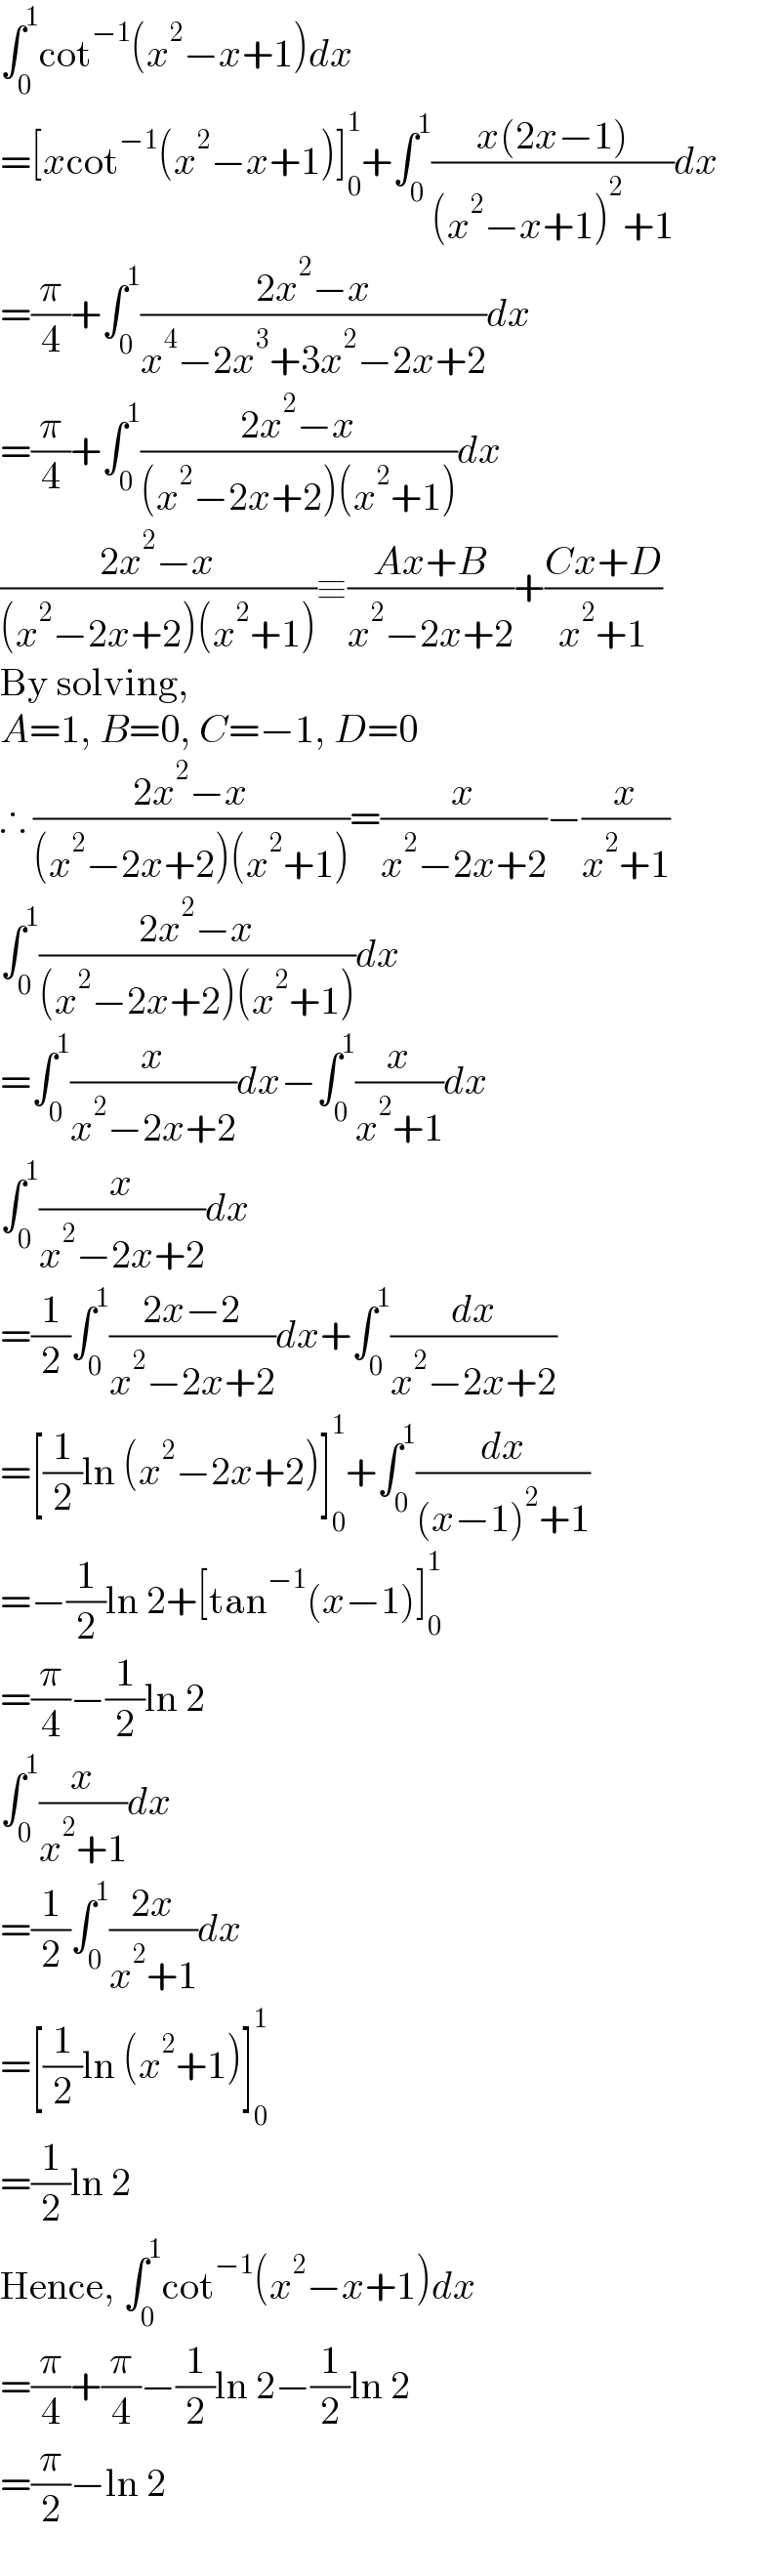 ∫_0 ^1 cot^(−1) (x^2 −x+1)dx  =[xcot^(−1) (x^2 −x+1)]_0 ^1 +∫_0 ^1 ((x(2x−1))/((x^2 −x+1)^2 +1))dx  =(π/4)+∫_0 ^1 ((2x^2 −x)/(x^4 −2x^3 +3x^2 −2x+2))dx  =(π/4)+∫_0 ^1 ((2x^2 −x)/((x^2 −2x+2)(x^2 +1)))dx  ((2x^2 −x)/((x^2 −2x+2)(x^2 +1)))≡((Ax+B)/(x^2 −2x+2))+((Cx+D)/(x^2 +1))  By solving,  A=1, B=0, C=−1, D=0  ∴ ((2x^2 −x)/((x^2 −2x+2)(x^2 +1)))=(x/(x^2 −2x+2))−(x/(x^2 +1))  ∫_0 ^1 ((2x^2 −x)/((x^2 −2x+2)(x^2 +1)))dx  =∫_0 ^1 (x/(x^2 −2x+2))dx−∫_0 ^1 (x/(x^2 +1))dx  ∫_0 ^1 (x/(x^2 −2x+2))dx  =(1/2)∫_0 ^1 ((2x−2)/(x^2 −2x+2))dx+∫_0 ^1 (dx/(x^2 −2x+2))  =[(1/2)ln (x^2 −2x+2)]_0 ^1 +∫_0 ^1 (dx/((x−1)^2 +1))  =−(1/2)ln 2+[tan^(−1) (x−1)]_0 ^1   =(π/4)−(1/2)ln 2  ∫_0 ^1 (x/(x^2 +1))dx  =(1/2)∫_0 ^1 ((2x)/(x^2 +1))dx  =[(1/2)ln (x^2 +1)]_0 ^1   =(1/2)ln 2  Hence, ∫_0 ^1 cot^(−1) (x^2 −x+1)dx  =(π/4)+(π/4)−(1/2)ln 2−(1/2)ln 2  =(π/2)−ln 2  